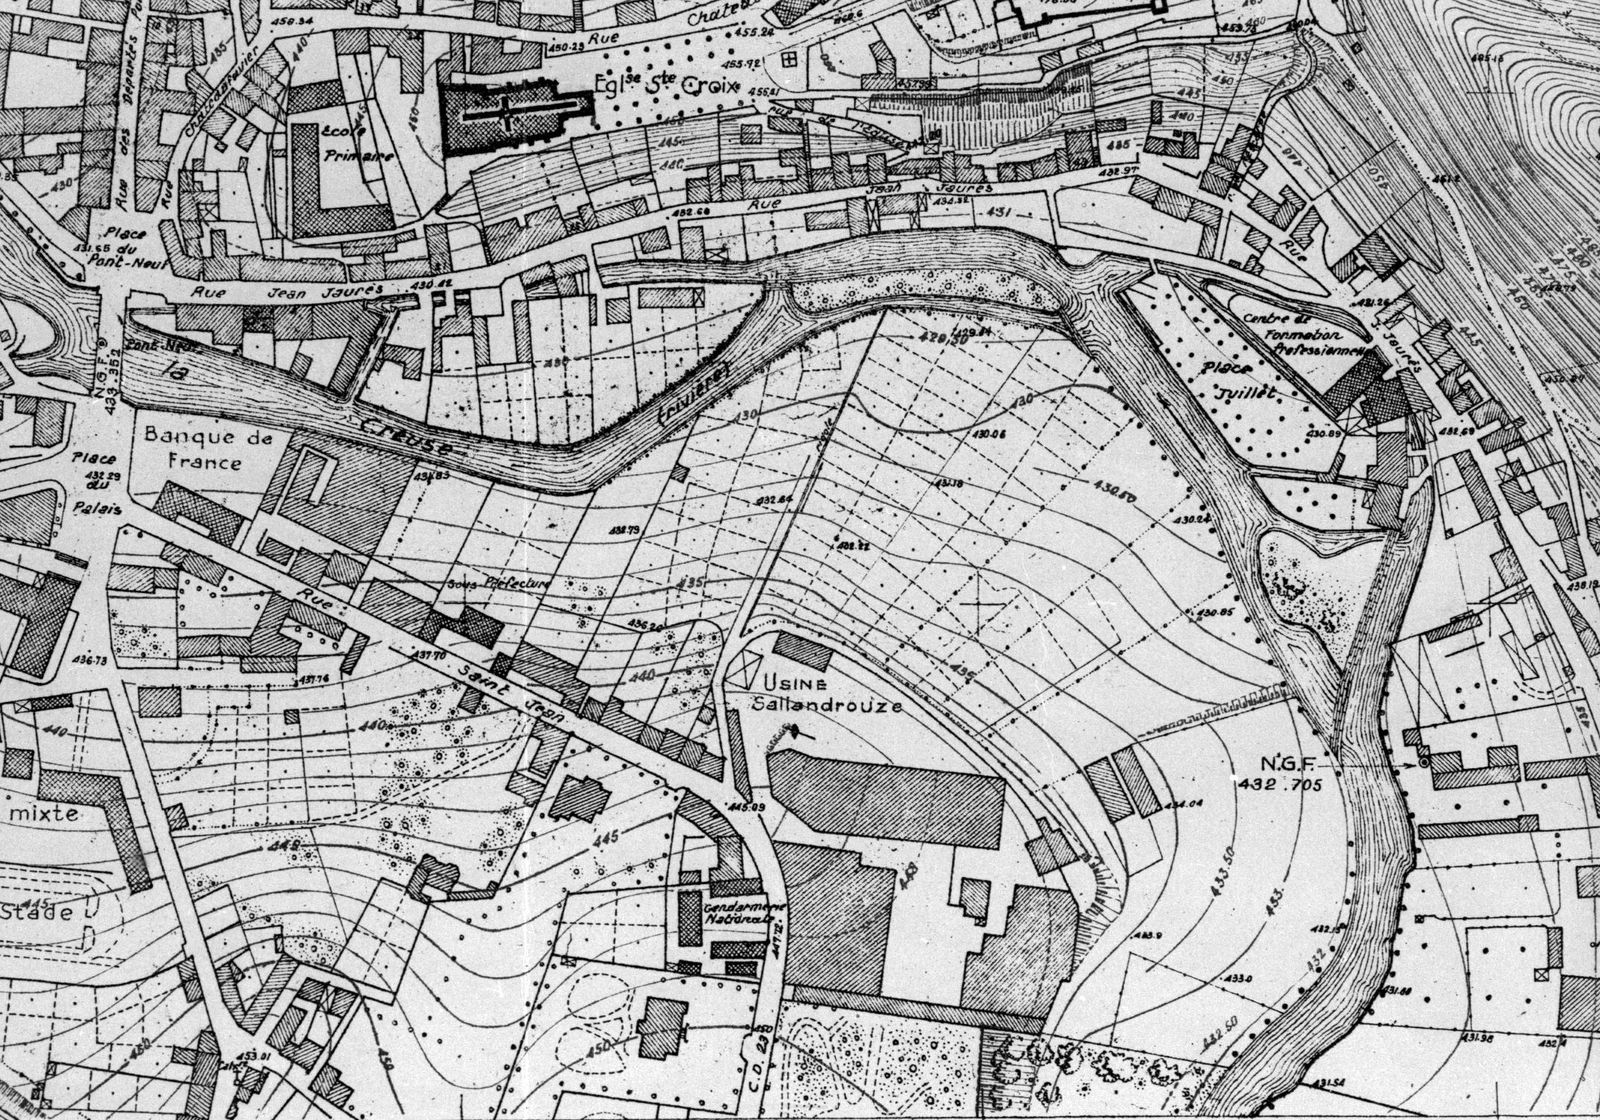 Plan du Ministère de la Reconstruction et de l'Urbanisme, montrant les usines Sallandrouze en 1949 (AD 23). 